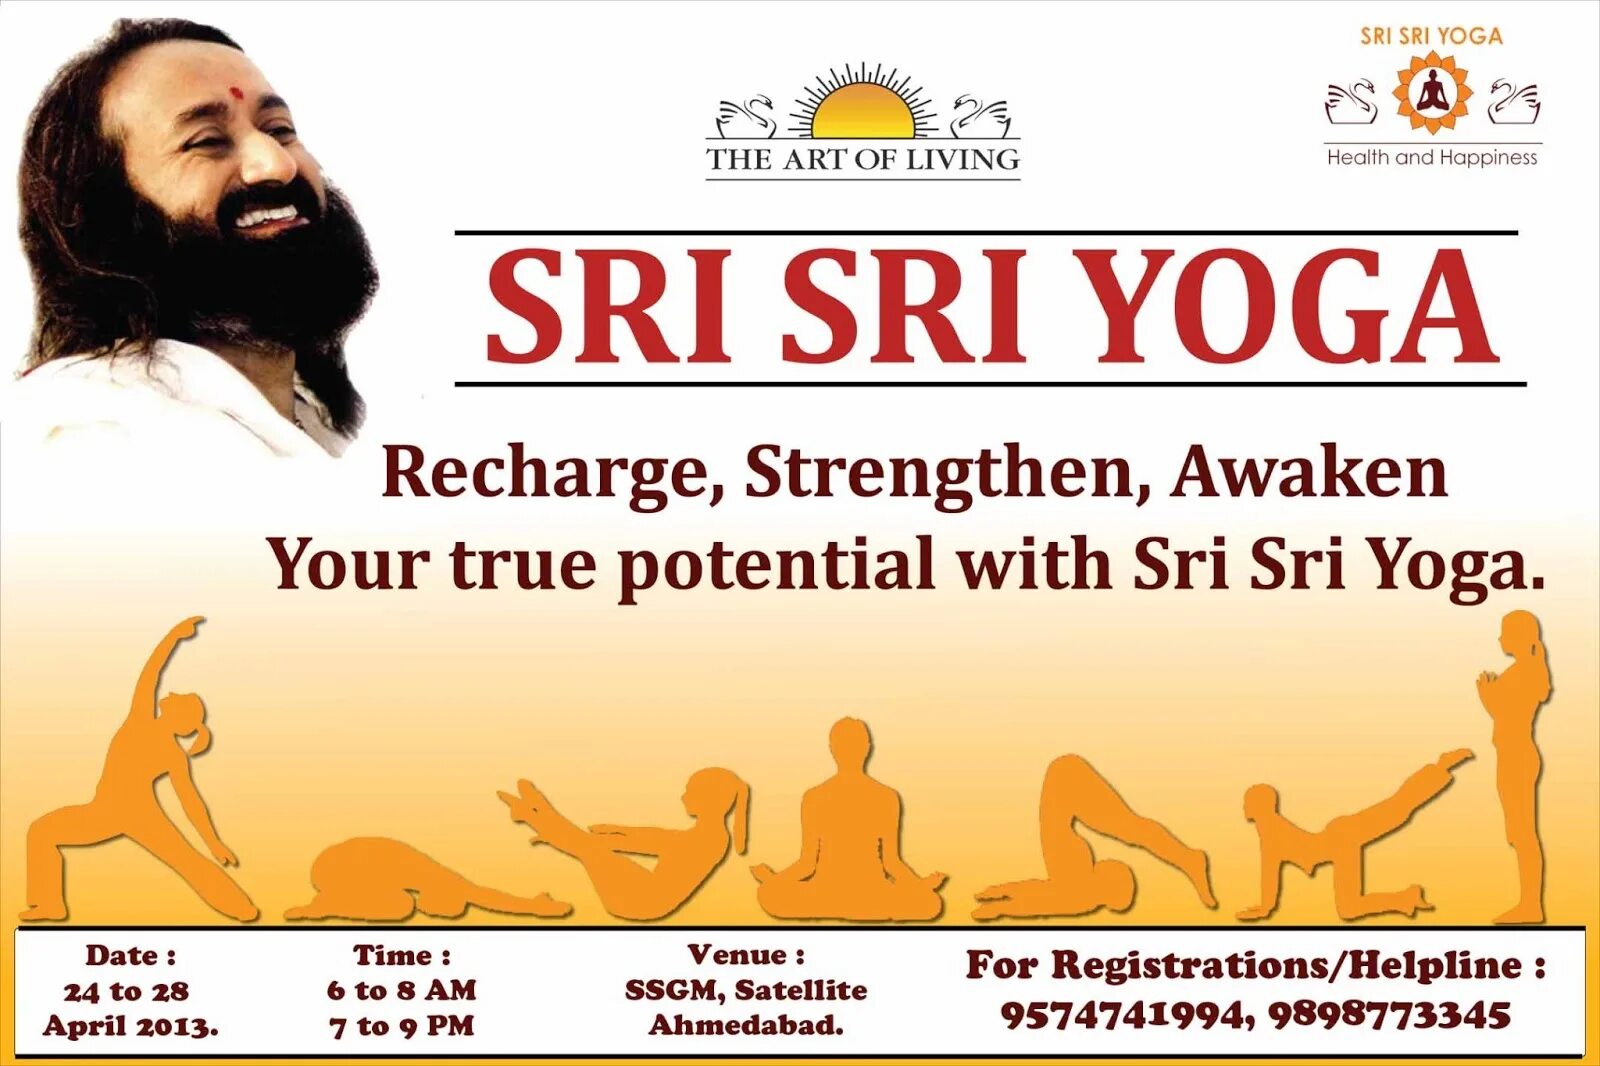 Шри Шри йога. Шри Шри йога искусство жизни. Логотип Шри Шри йоги. Шри Шри йога поклонение солнцу.